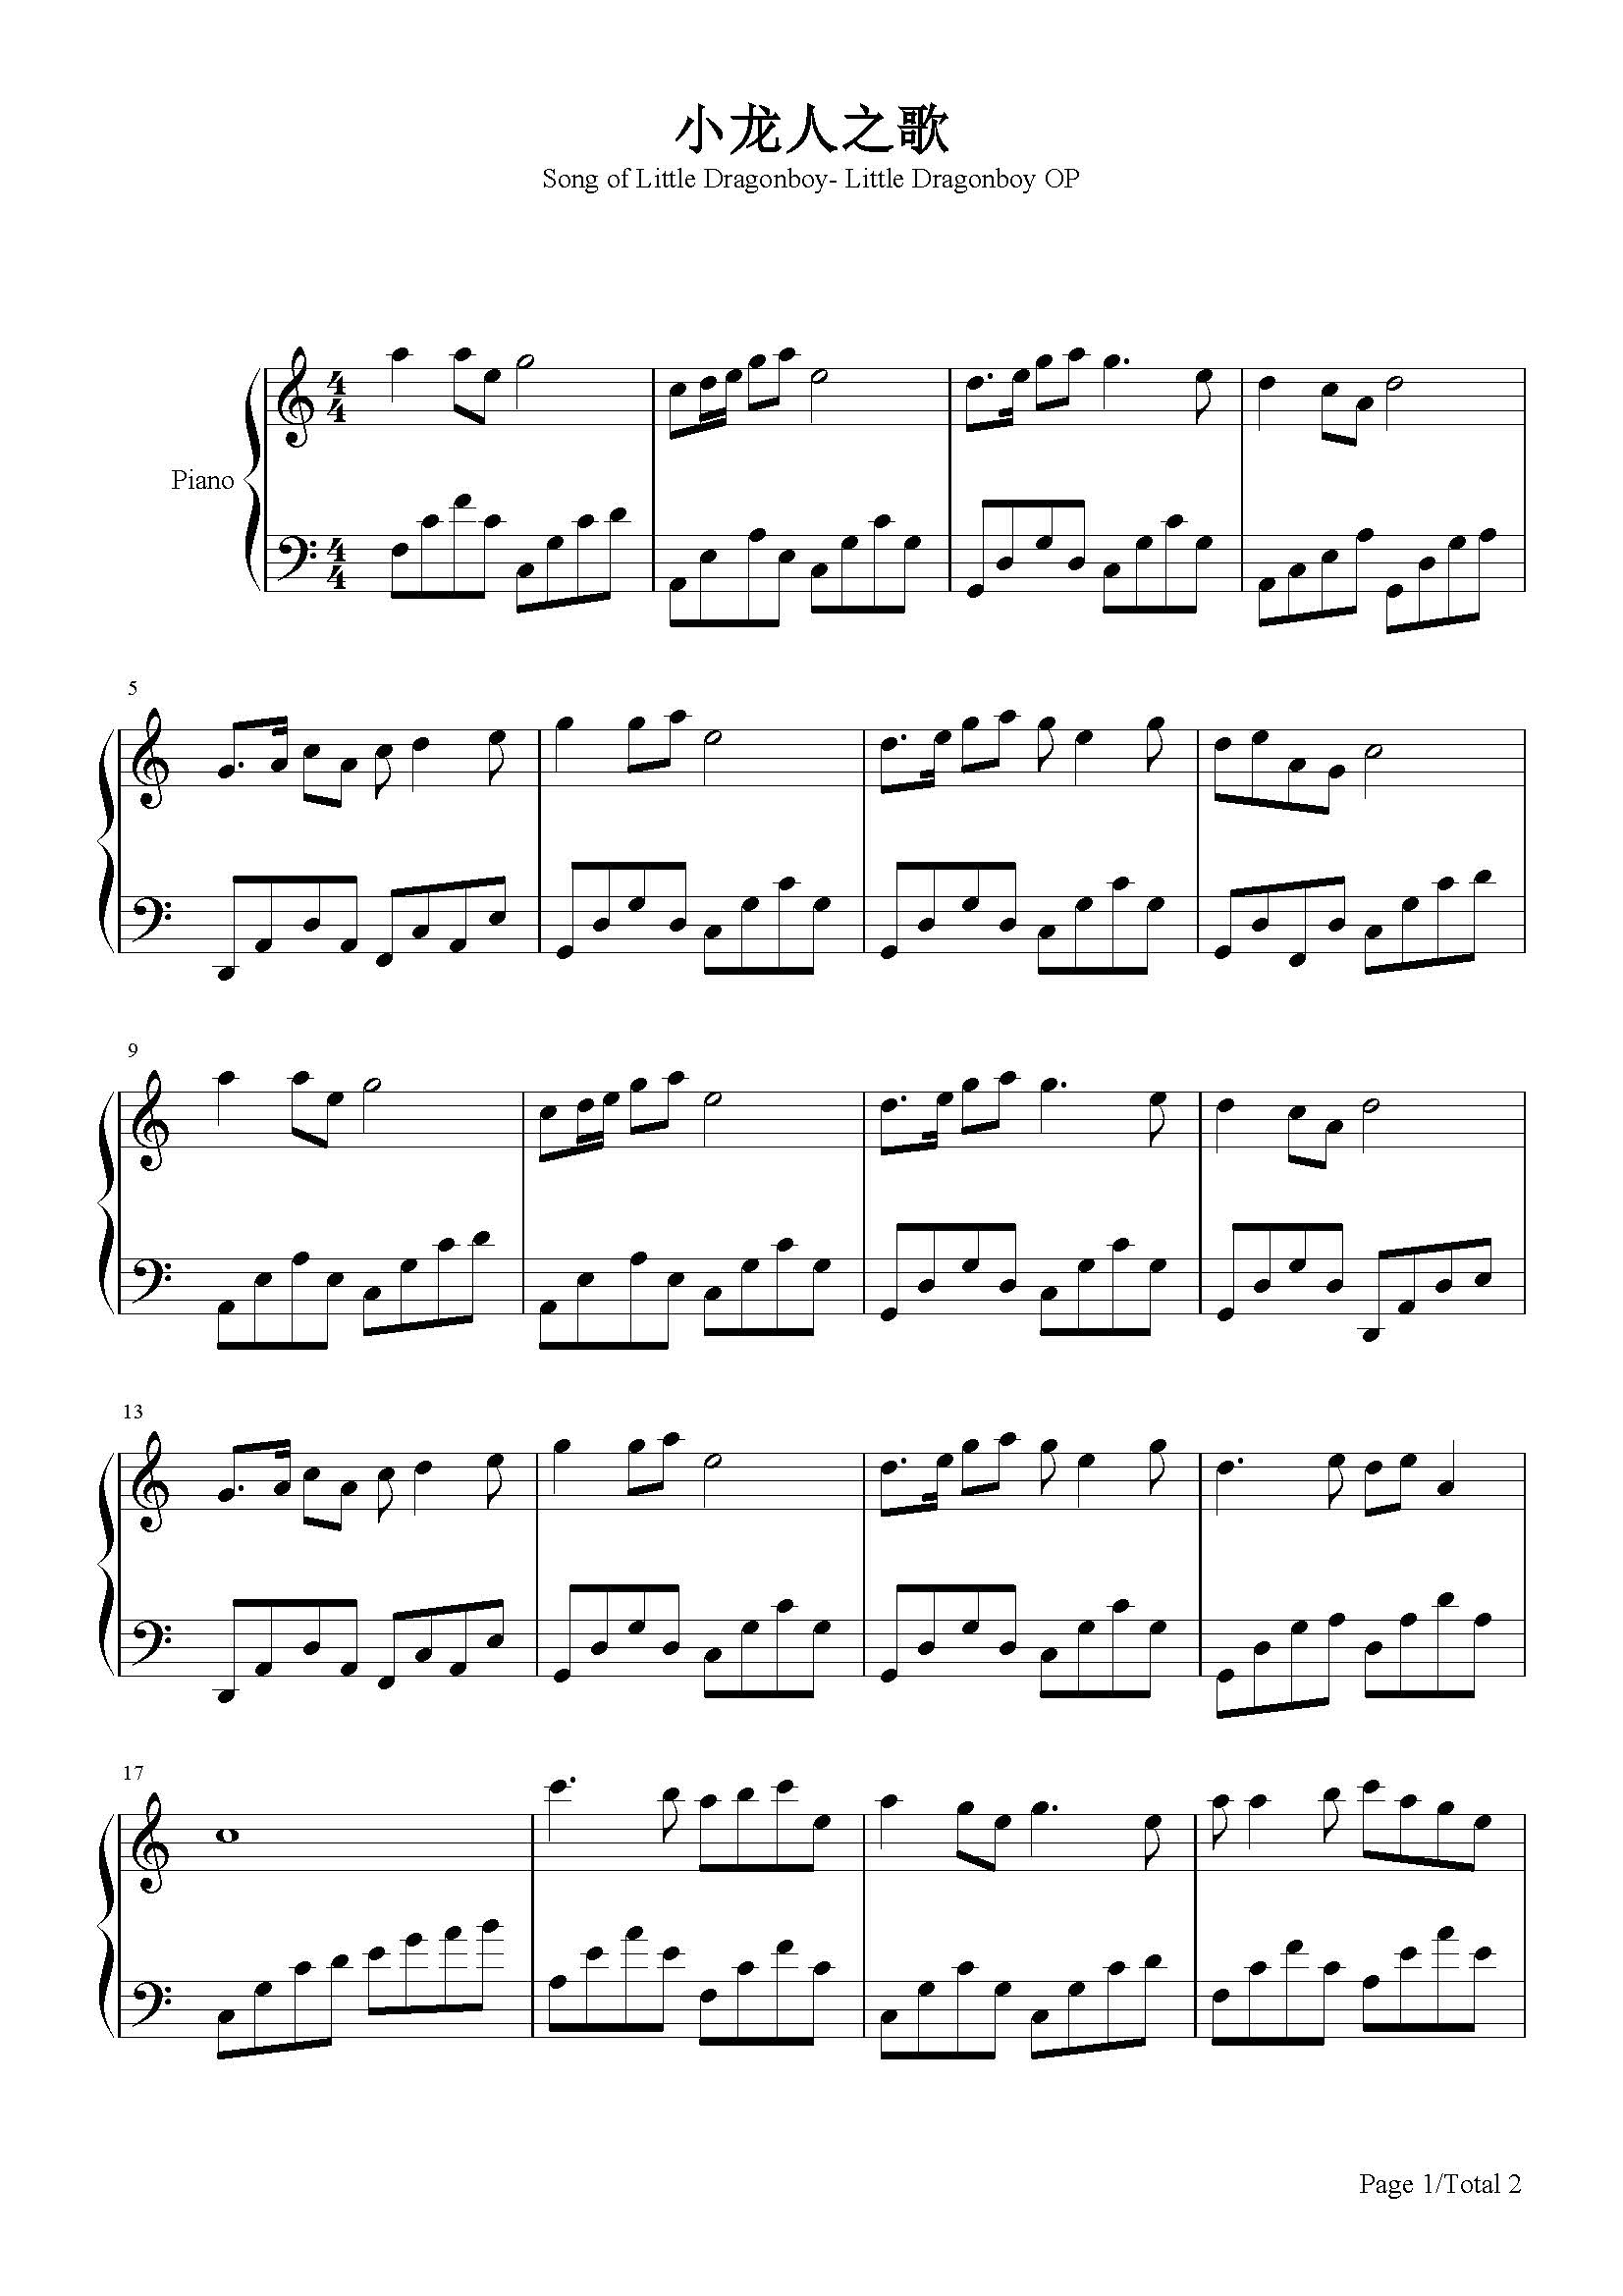 小龙人之歌-周雨歌-c调 -流行钢琴五线谱